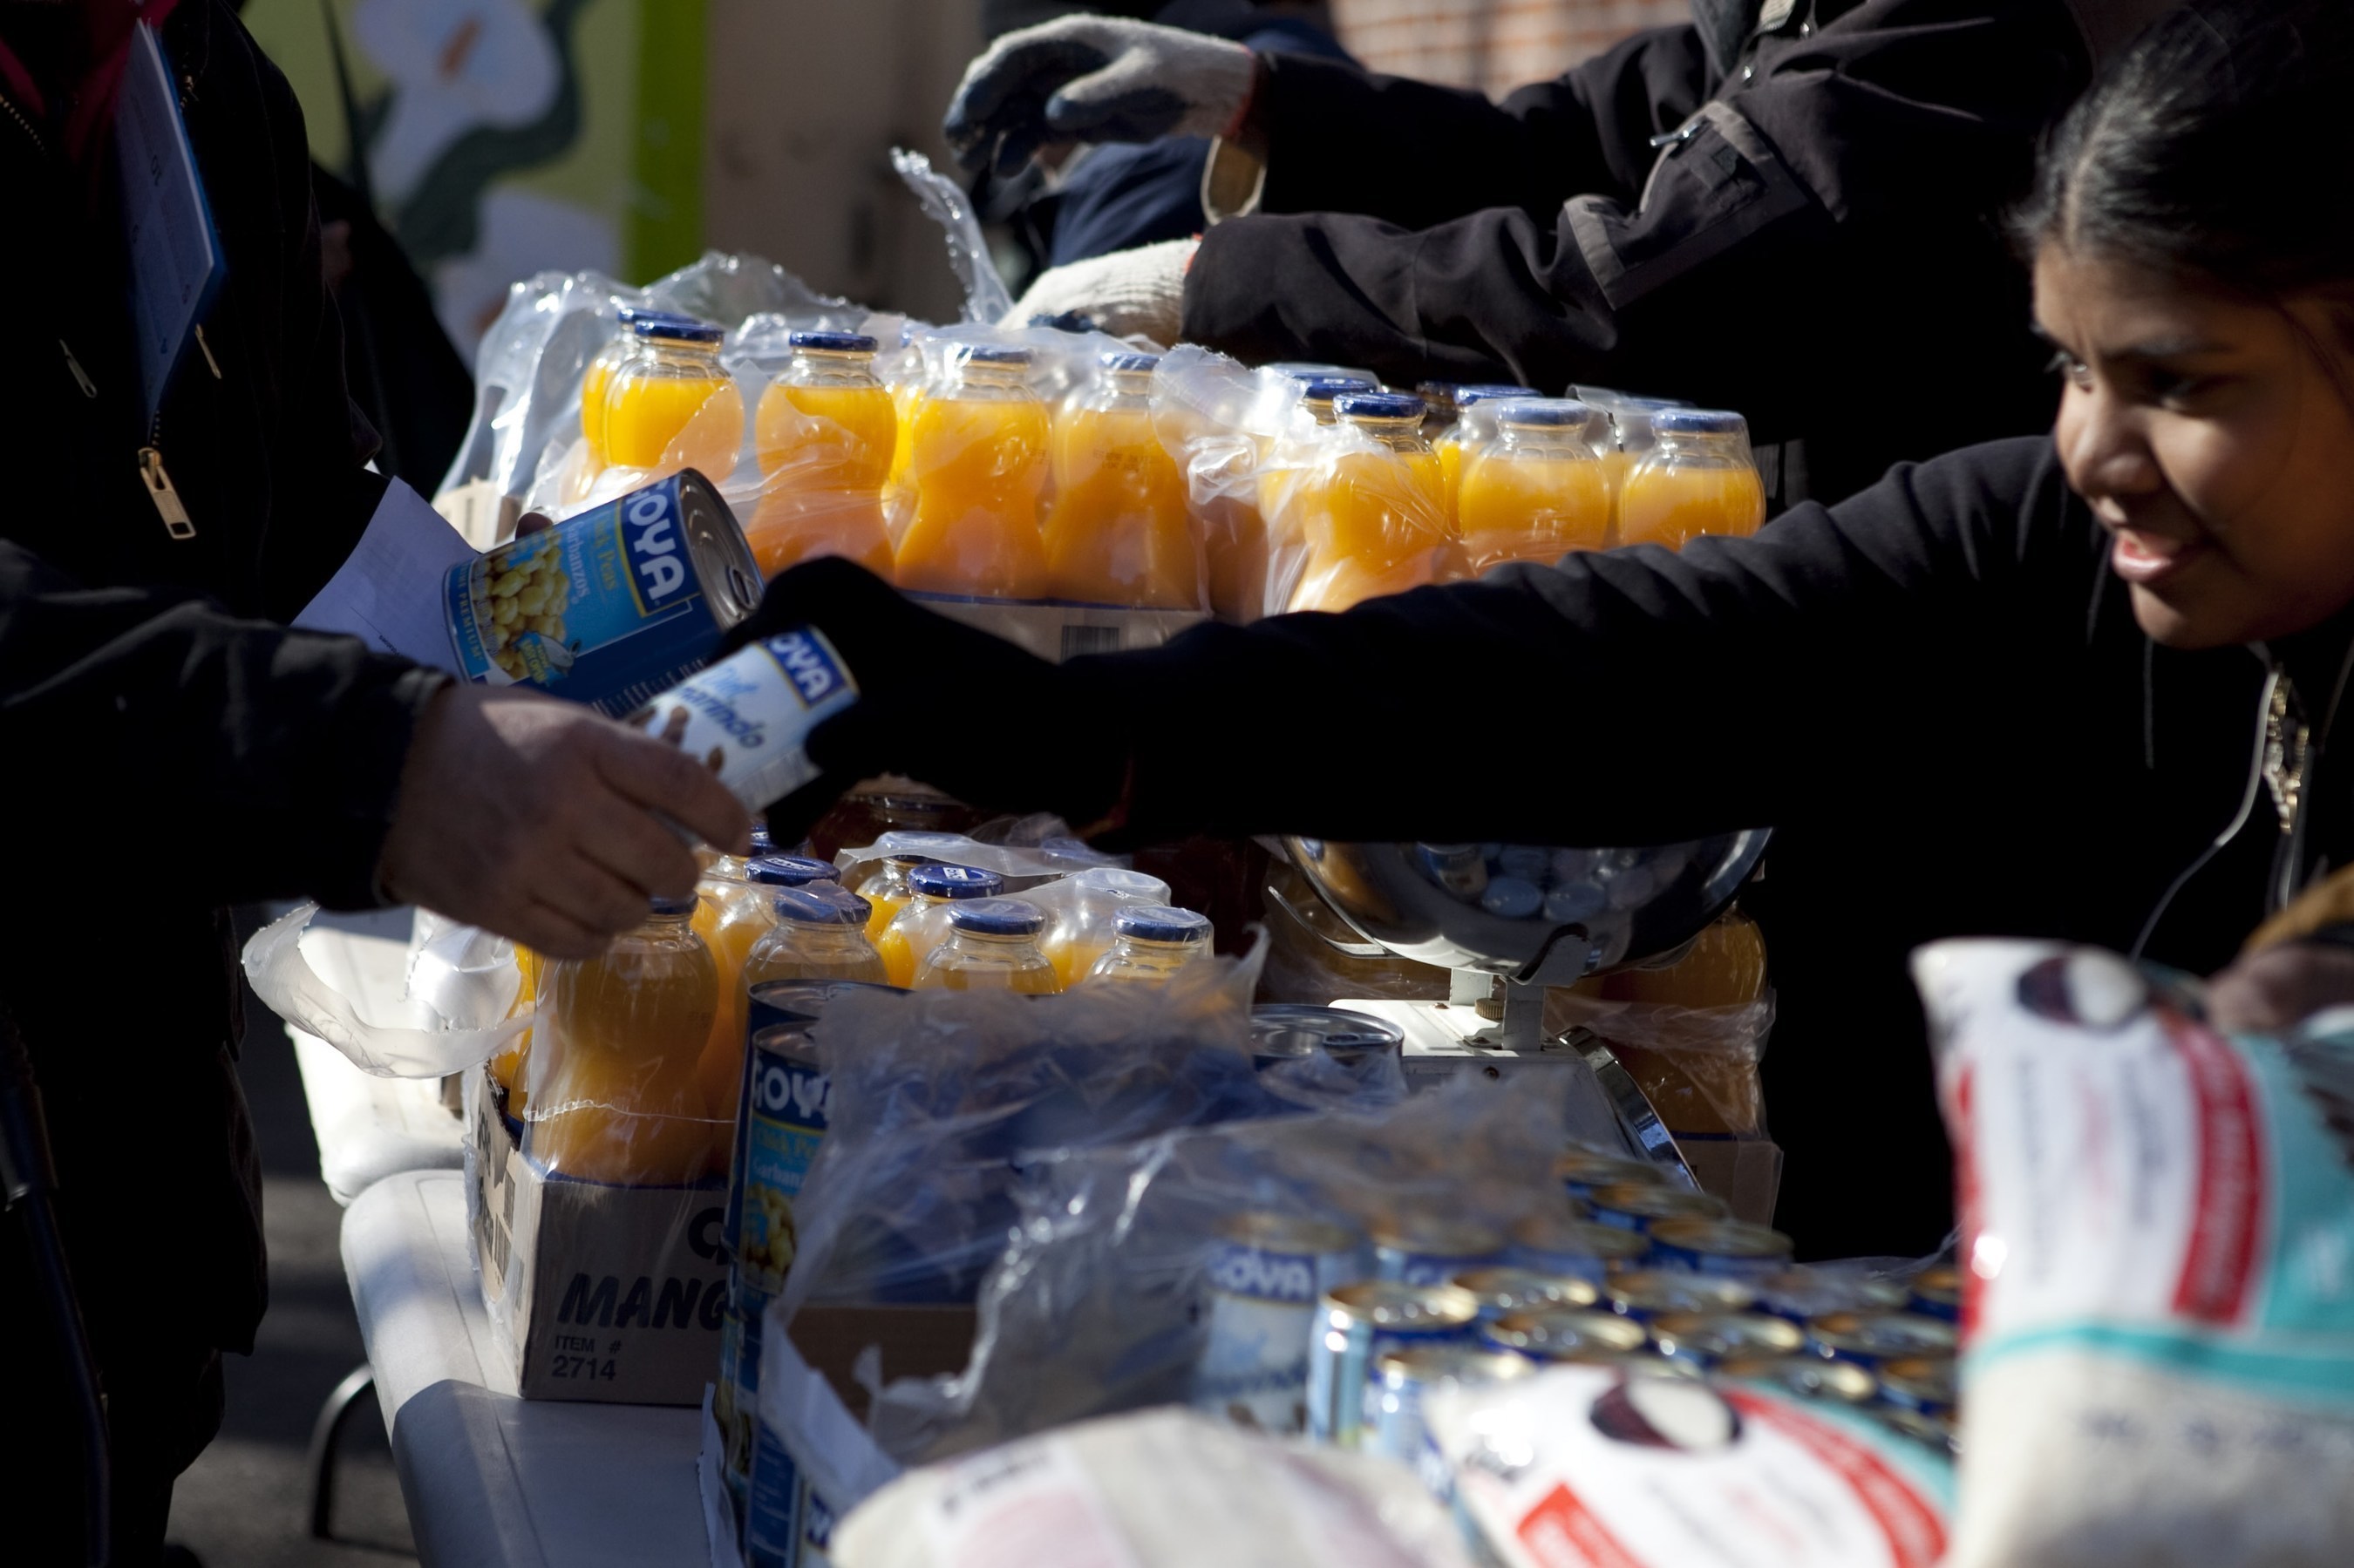 Goya Foods dona 30,000 libras de alimentos a victimas del terremoto en el Ecuador